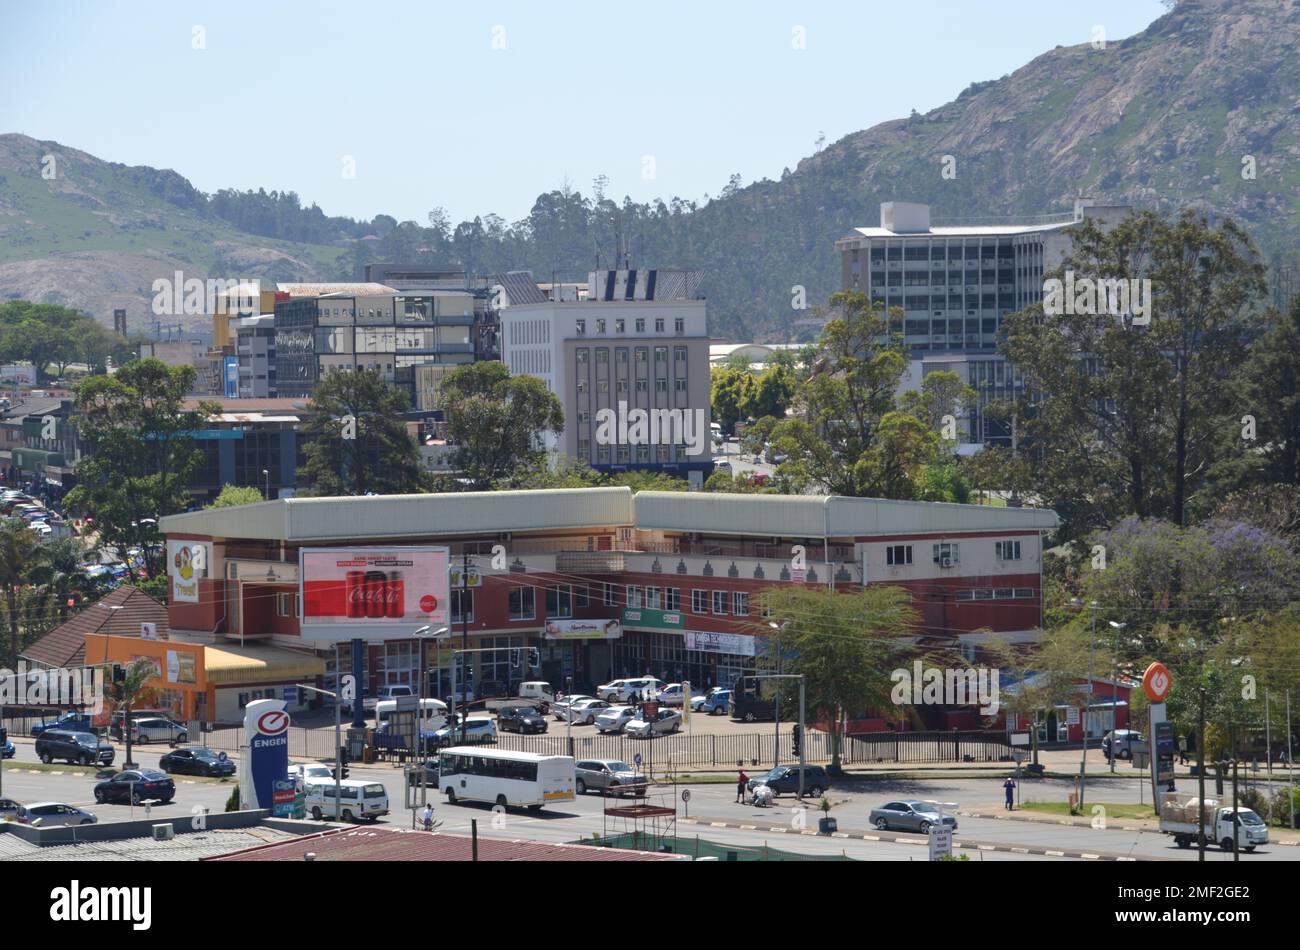 Vue sur le royaume de montagne de la capitale eSwatini Mbabane avec des bâtiments, des commerces et des transports dans le centre-ville Banque D'Images